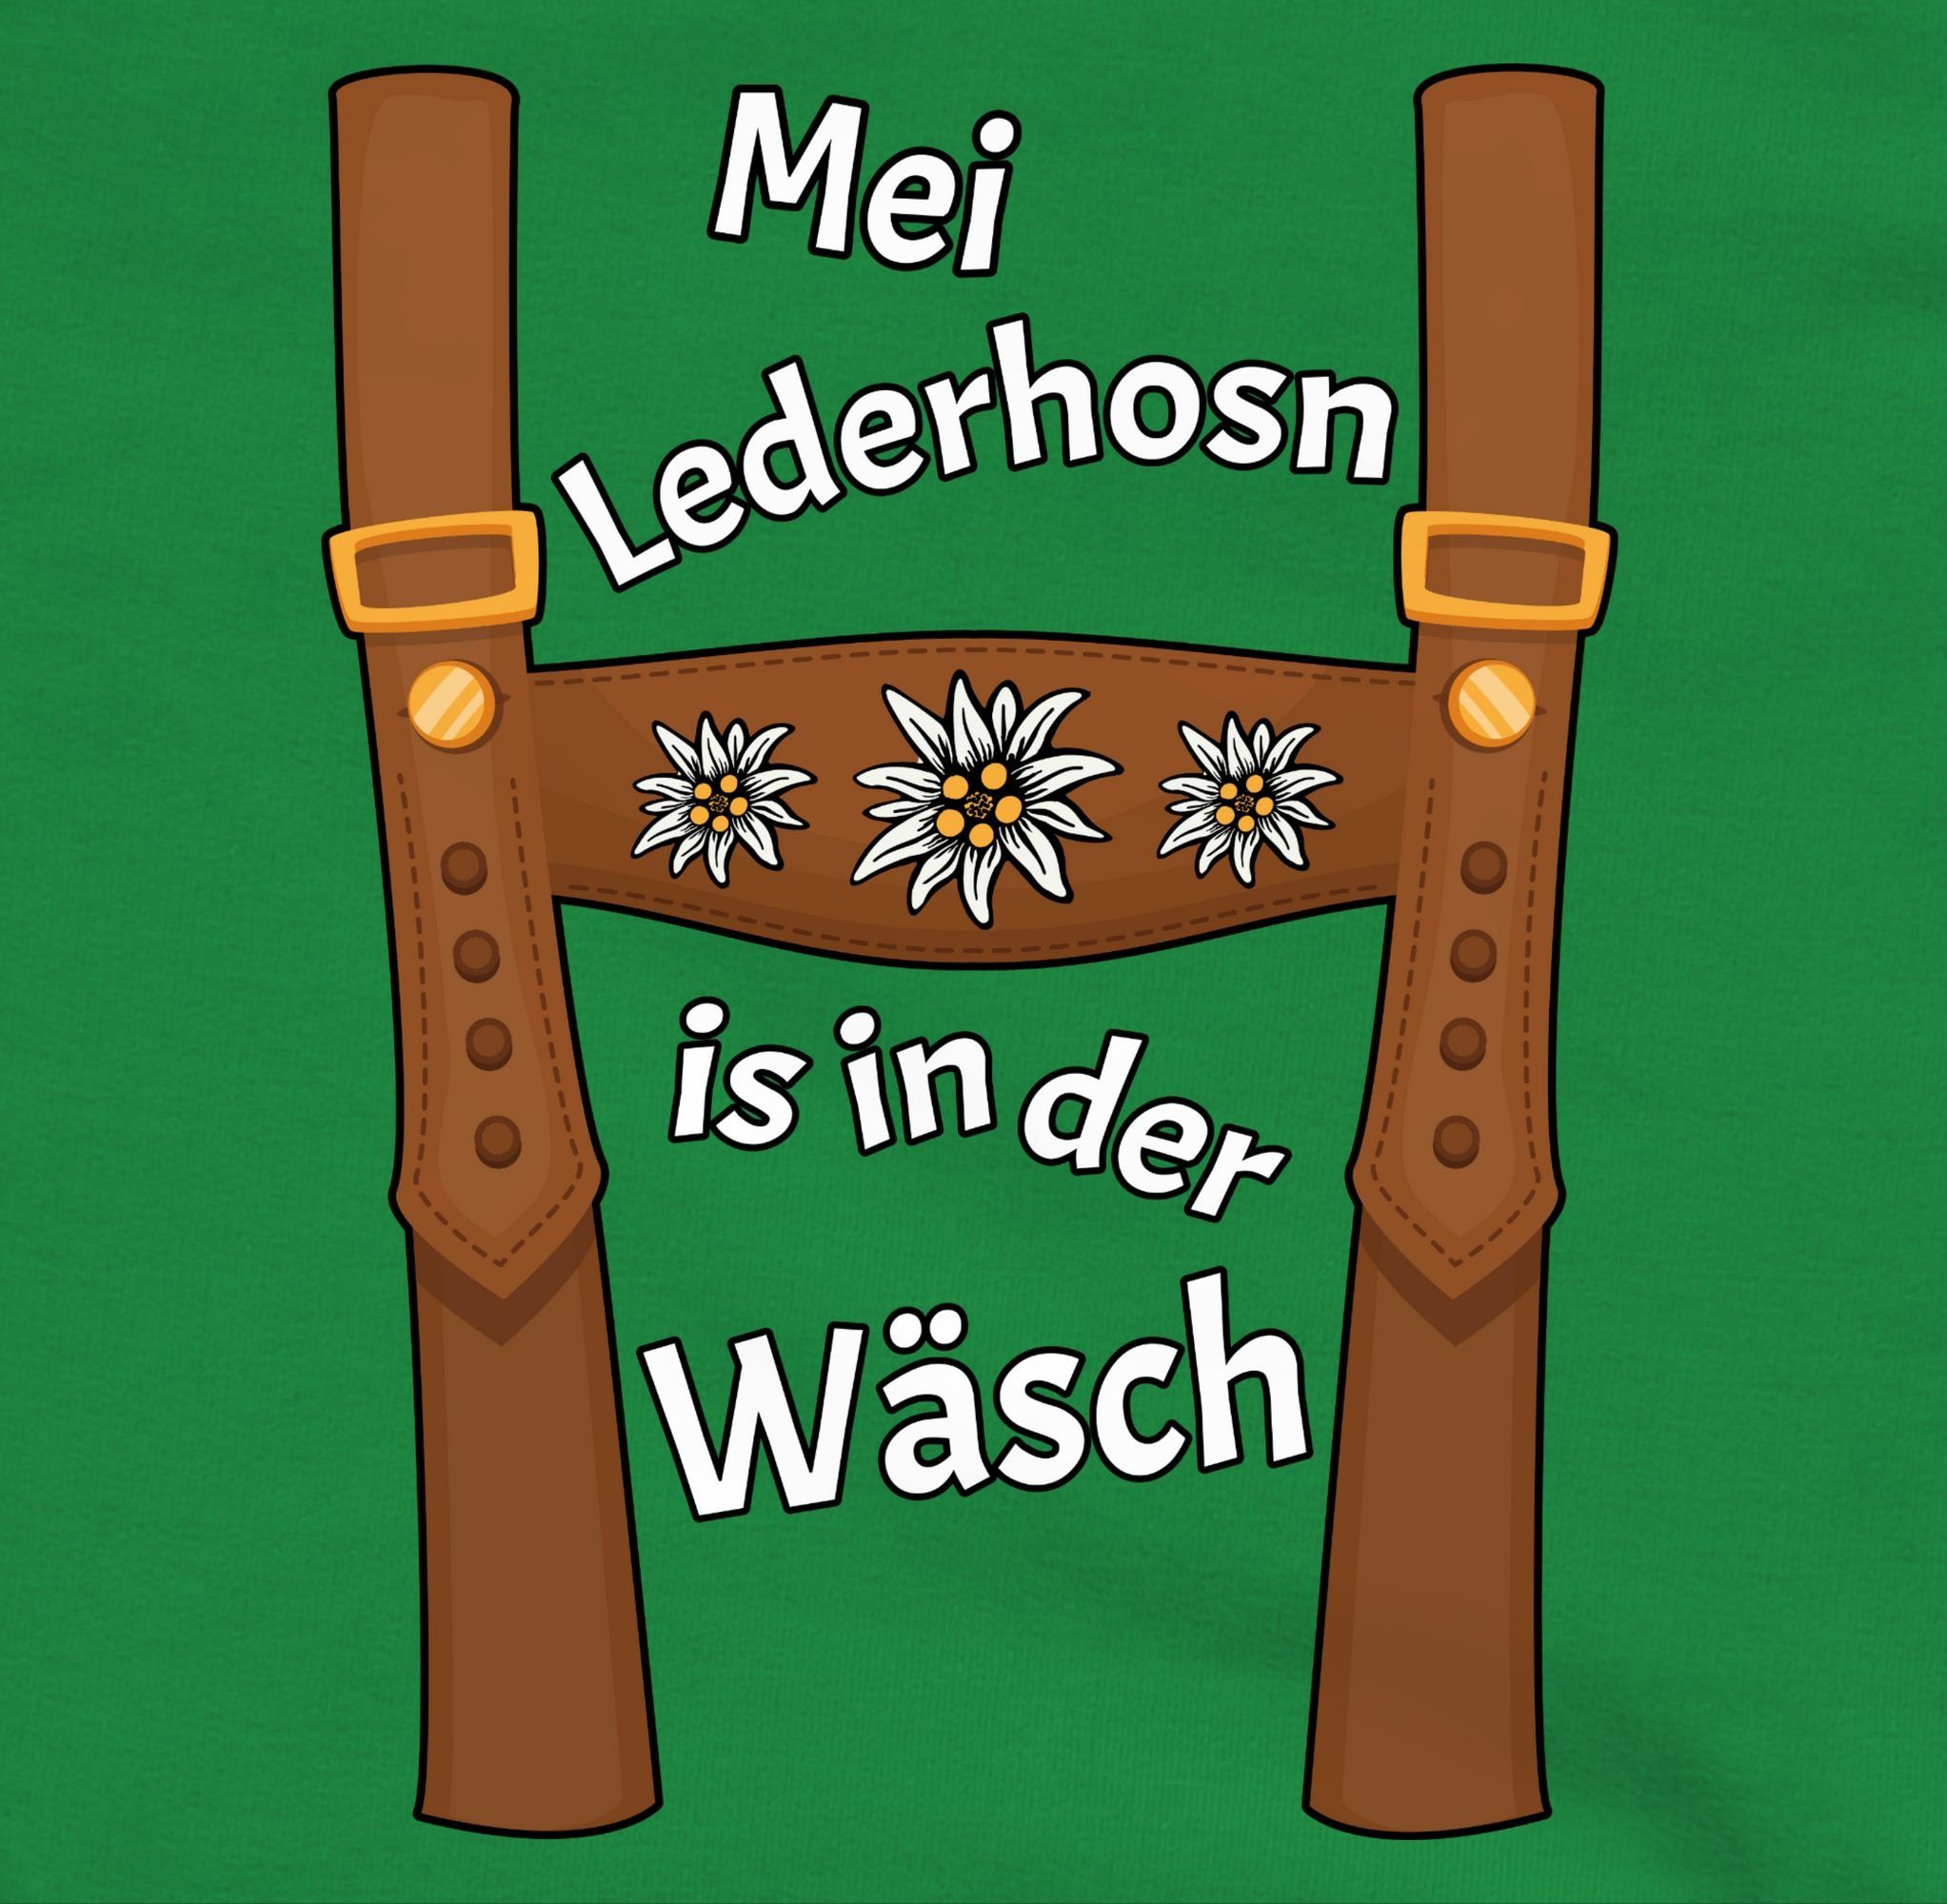 Mei Lederhosn Wäsche Kinder is in der da Sweatshirt - ist 1 Oktoberfest Lederhose Shirtracer für Wäsch Meine Outfit Mode Grün in